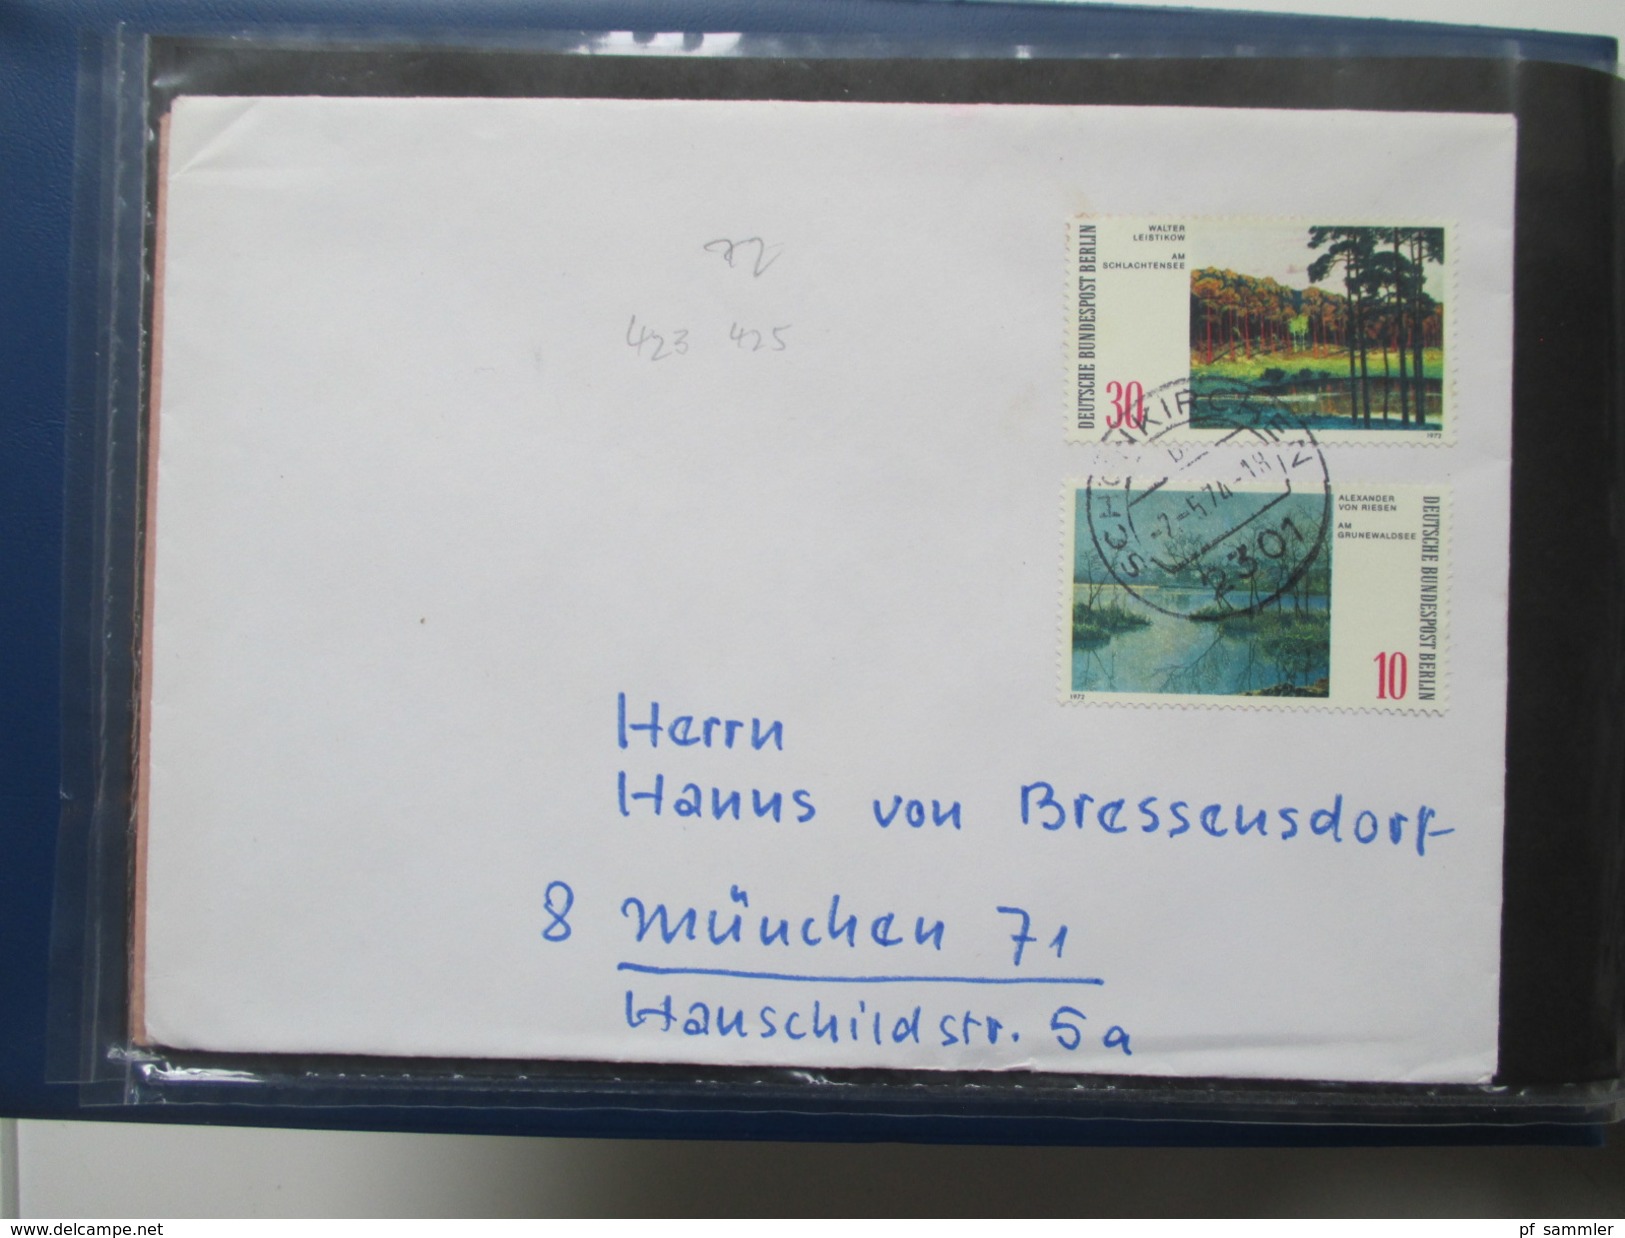 Berlin Belegesammlung 100 Briefe.Bedarf / FDC 1972-1975. Interessante Stücke / Stöberposten! Bund / Berlin Stempel. ATM - Collezioni (in Album)